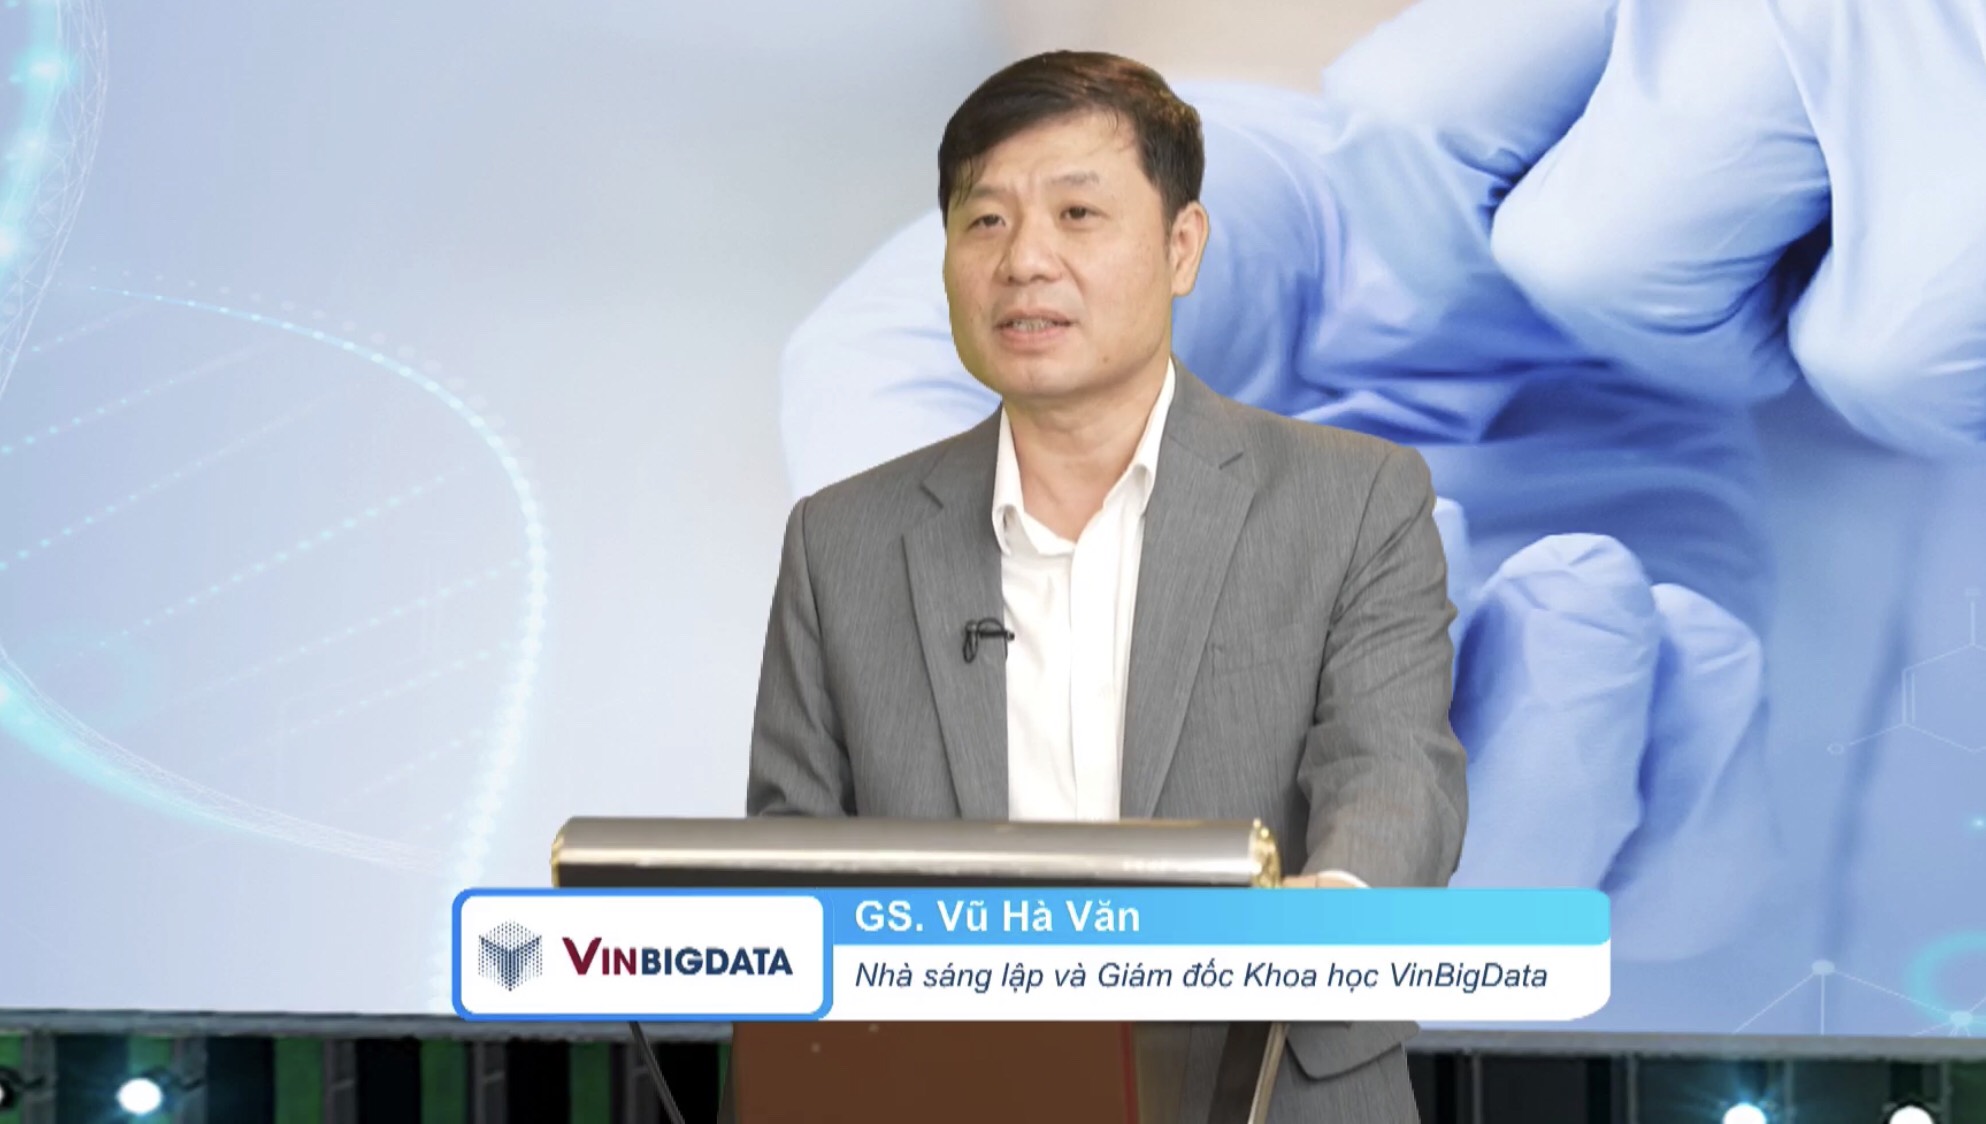 Đời sống - Vingroup hoàn thành nghiên cứu giải mã gen người Việt đầu tiên (Hình 3).